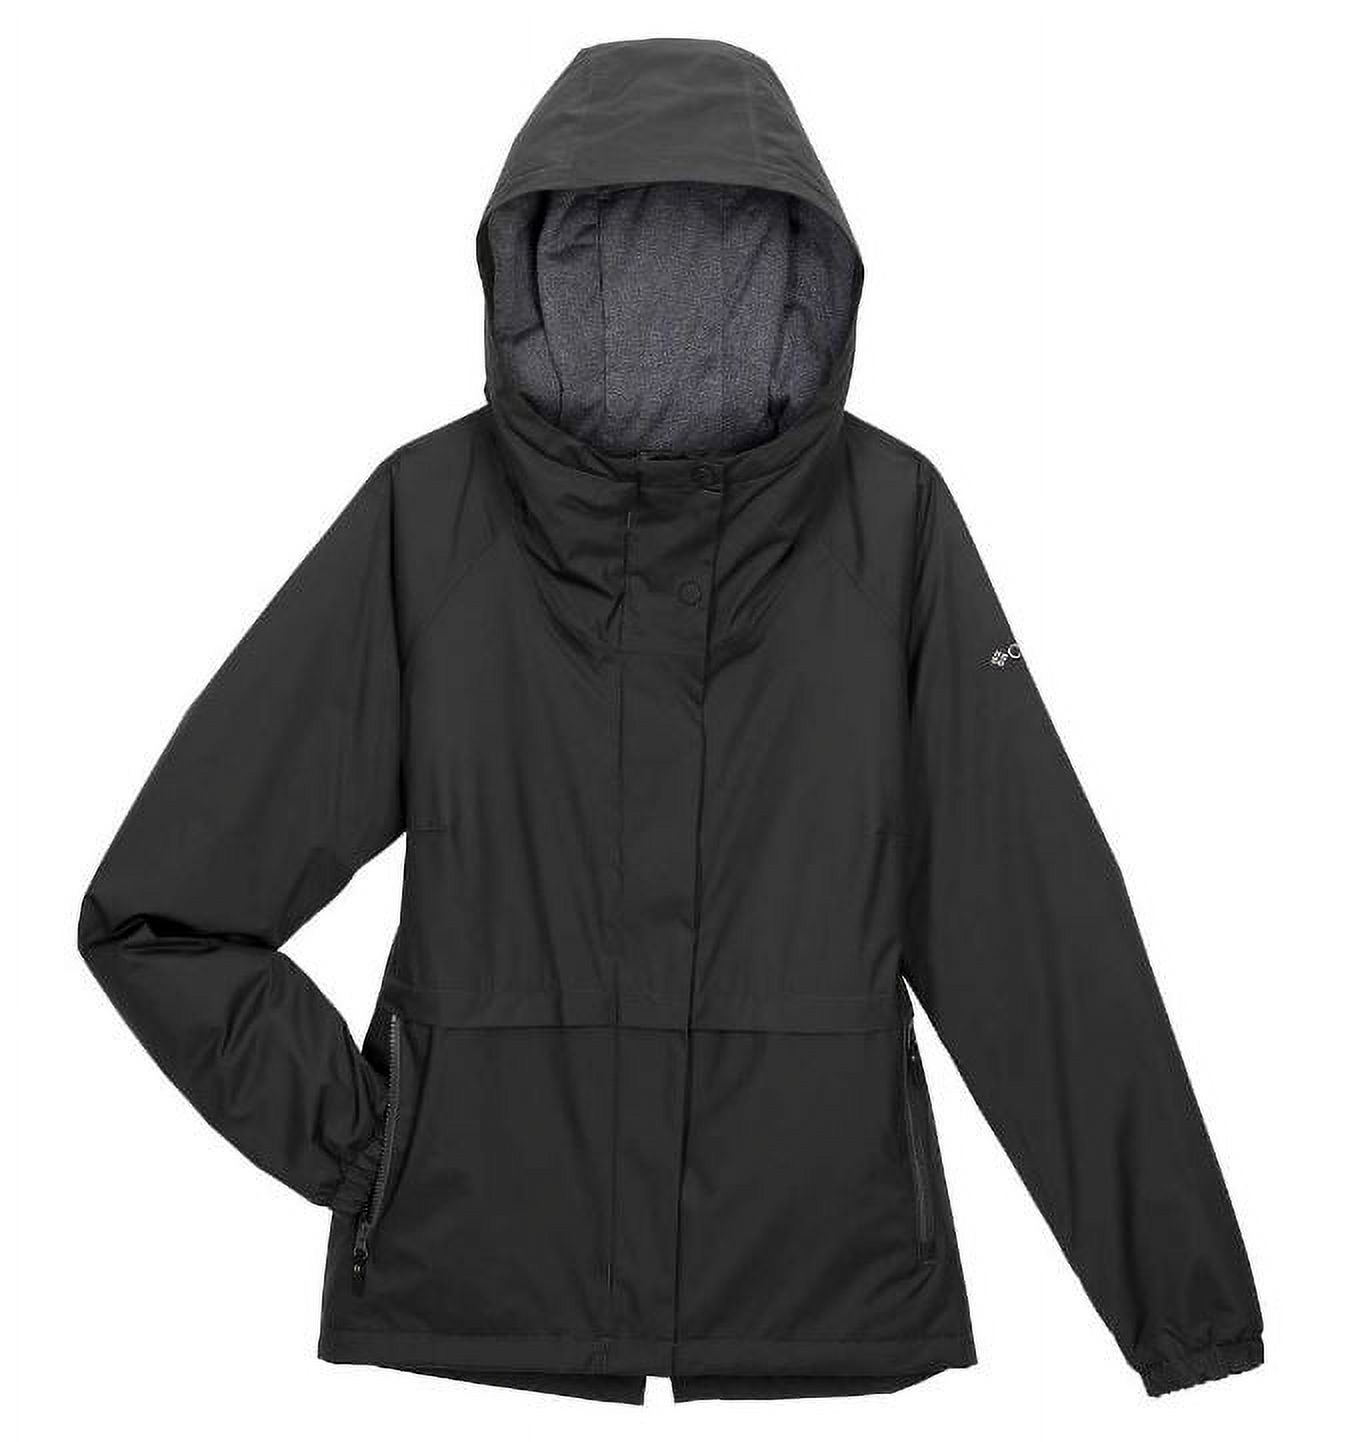 Columbia Women's Waterproof Omni-Tech Waterproof Hooded Jacket, Black, Medium - image 1 of 4